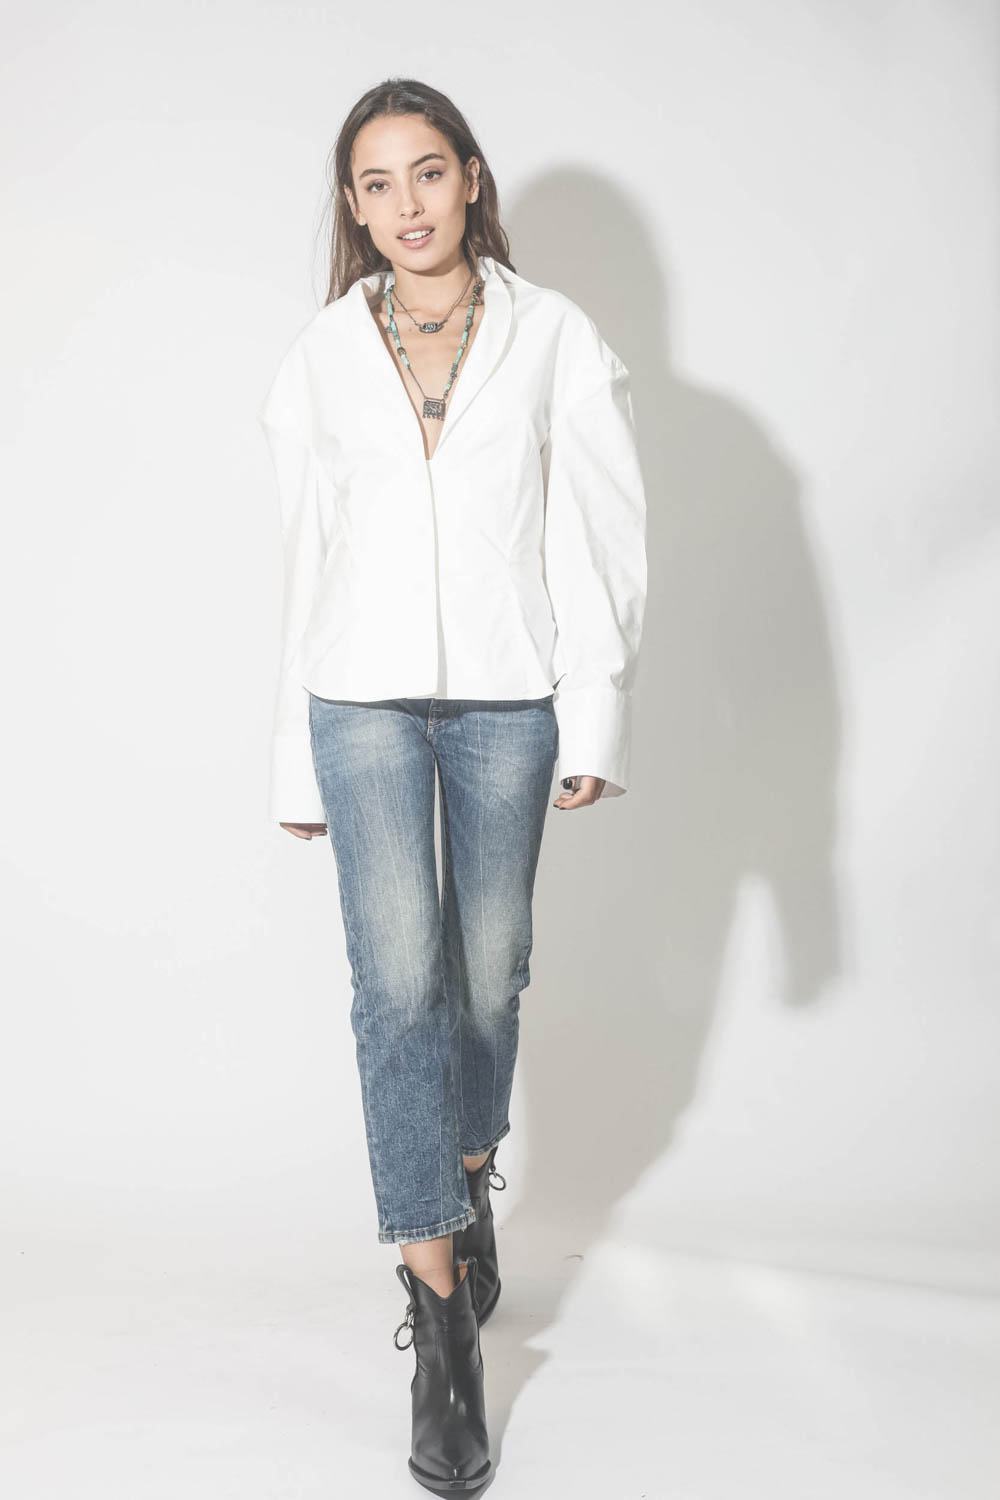 Collier sautoir perles et grigris pendentif vintage Voyageuse Patricia Arango. Porté avec une chemise blanche et un jeans.